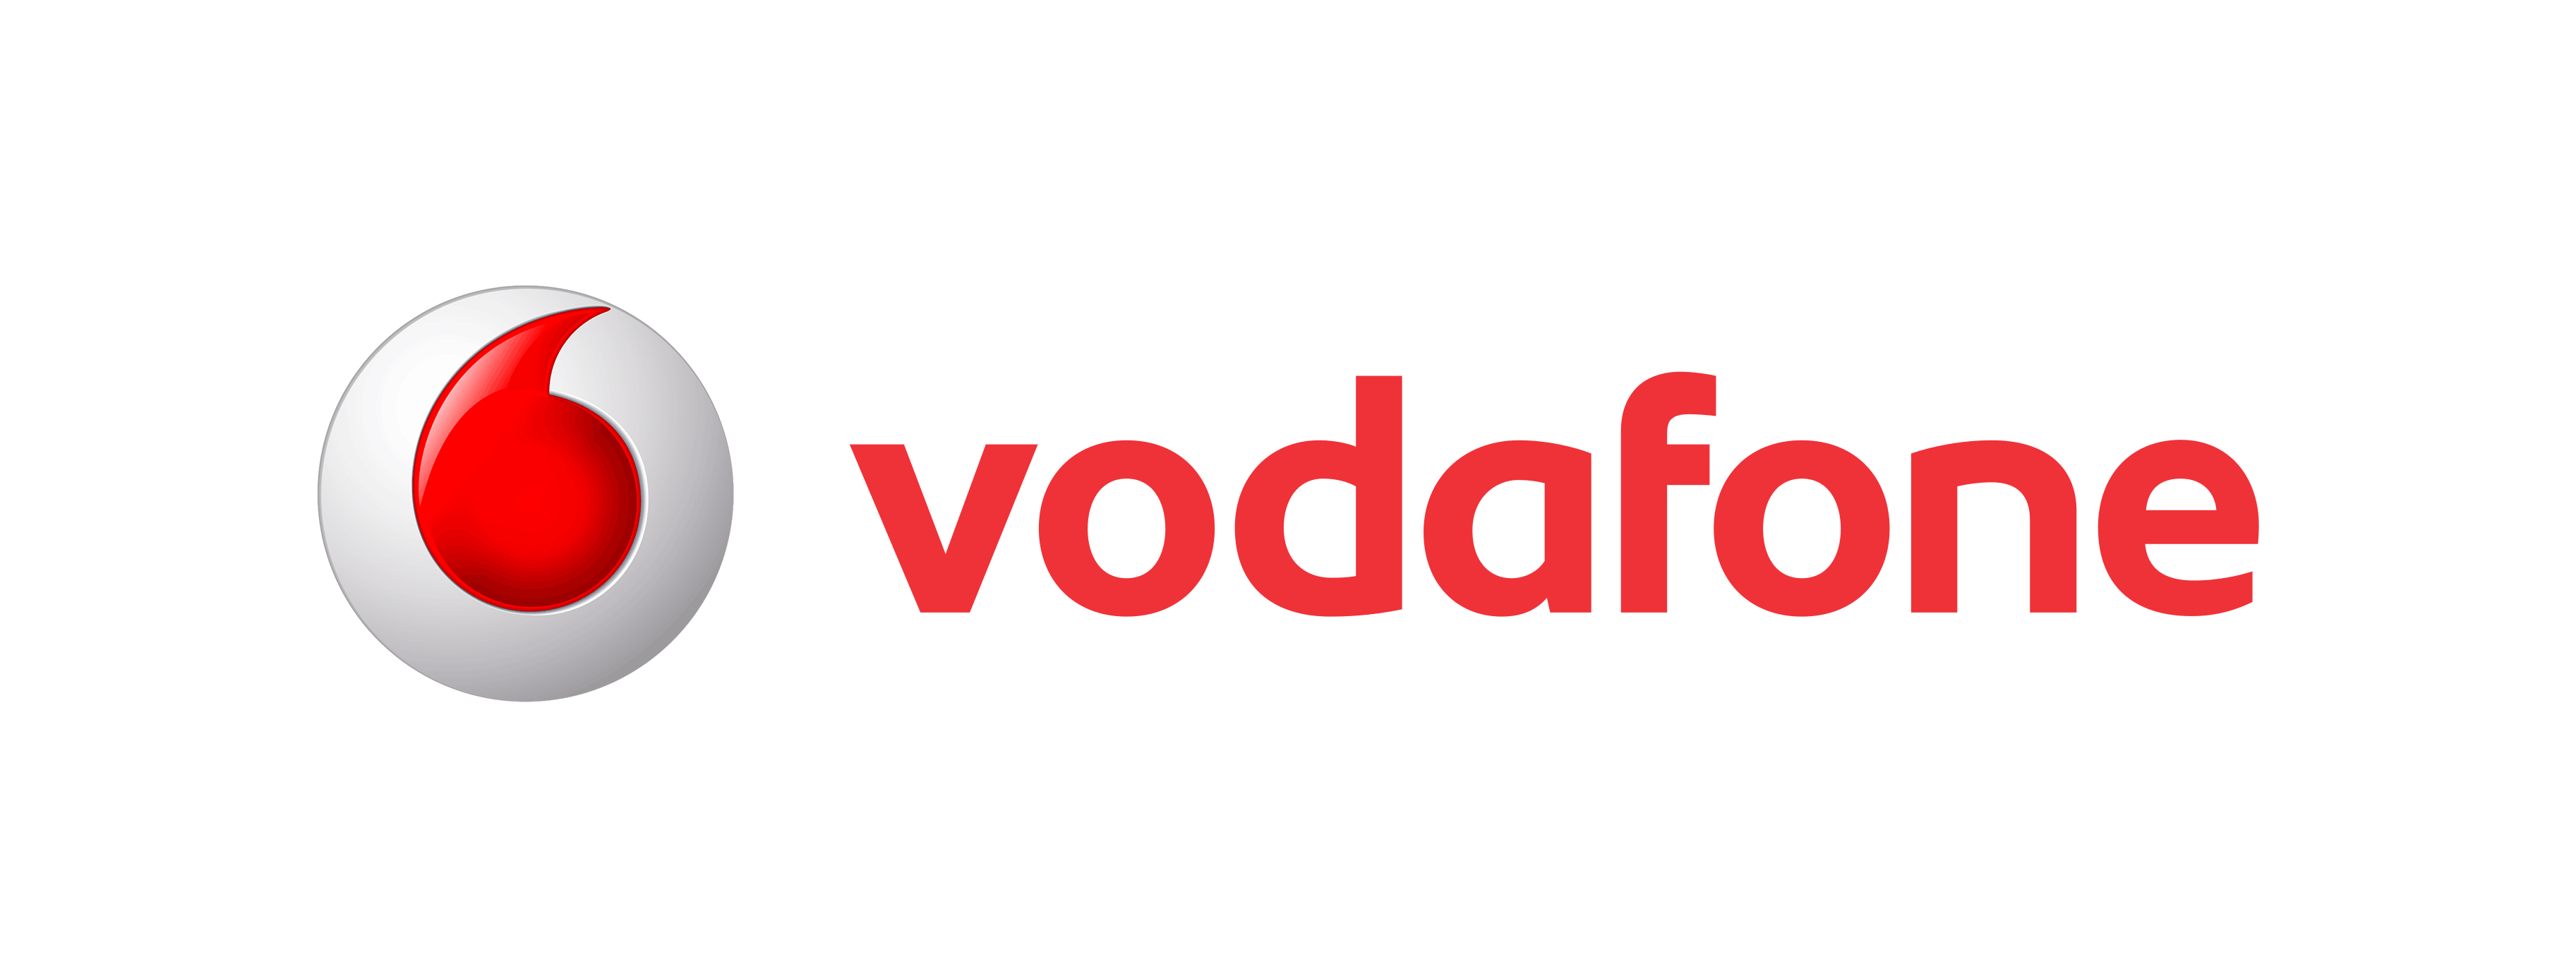 Vodafone Logo Png Transparent